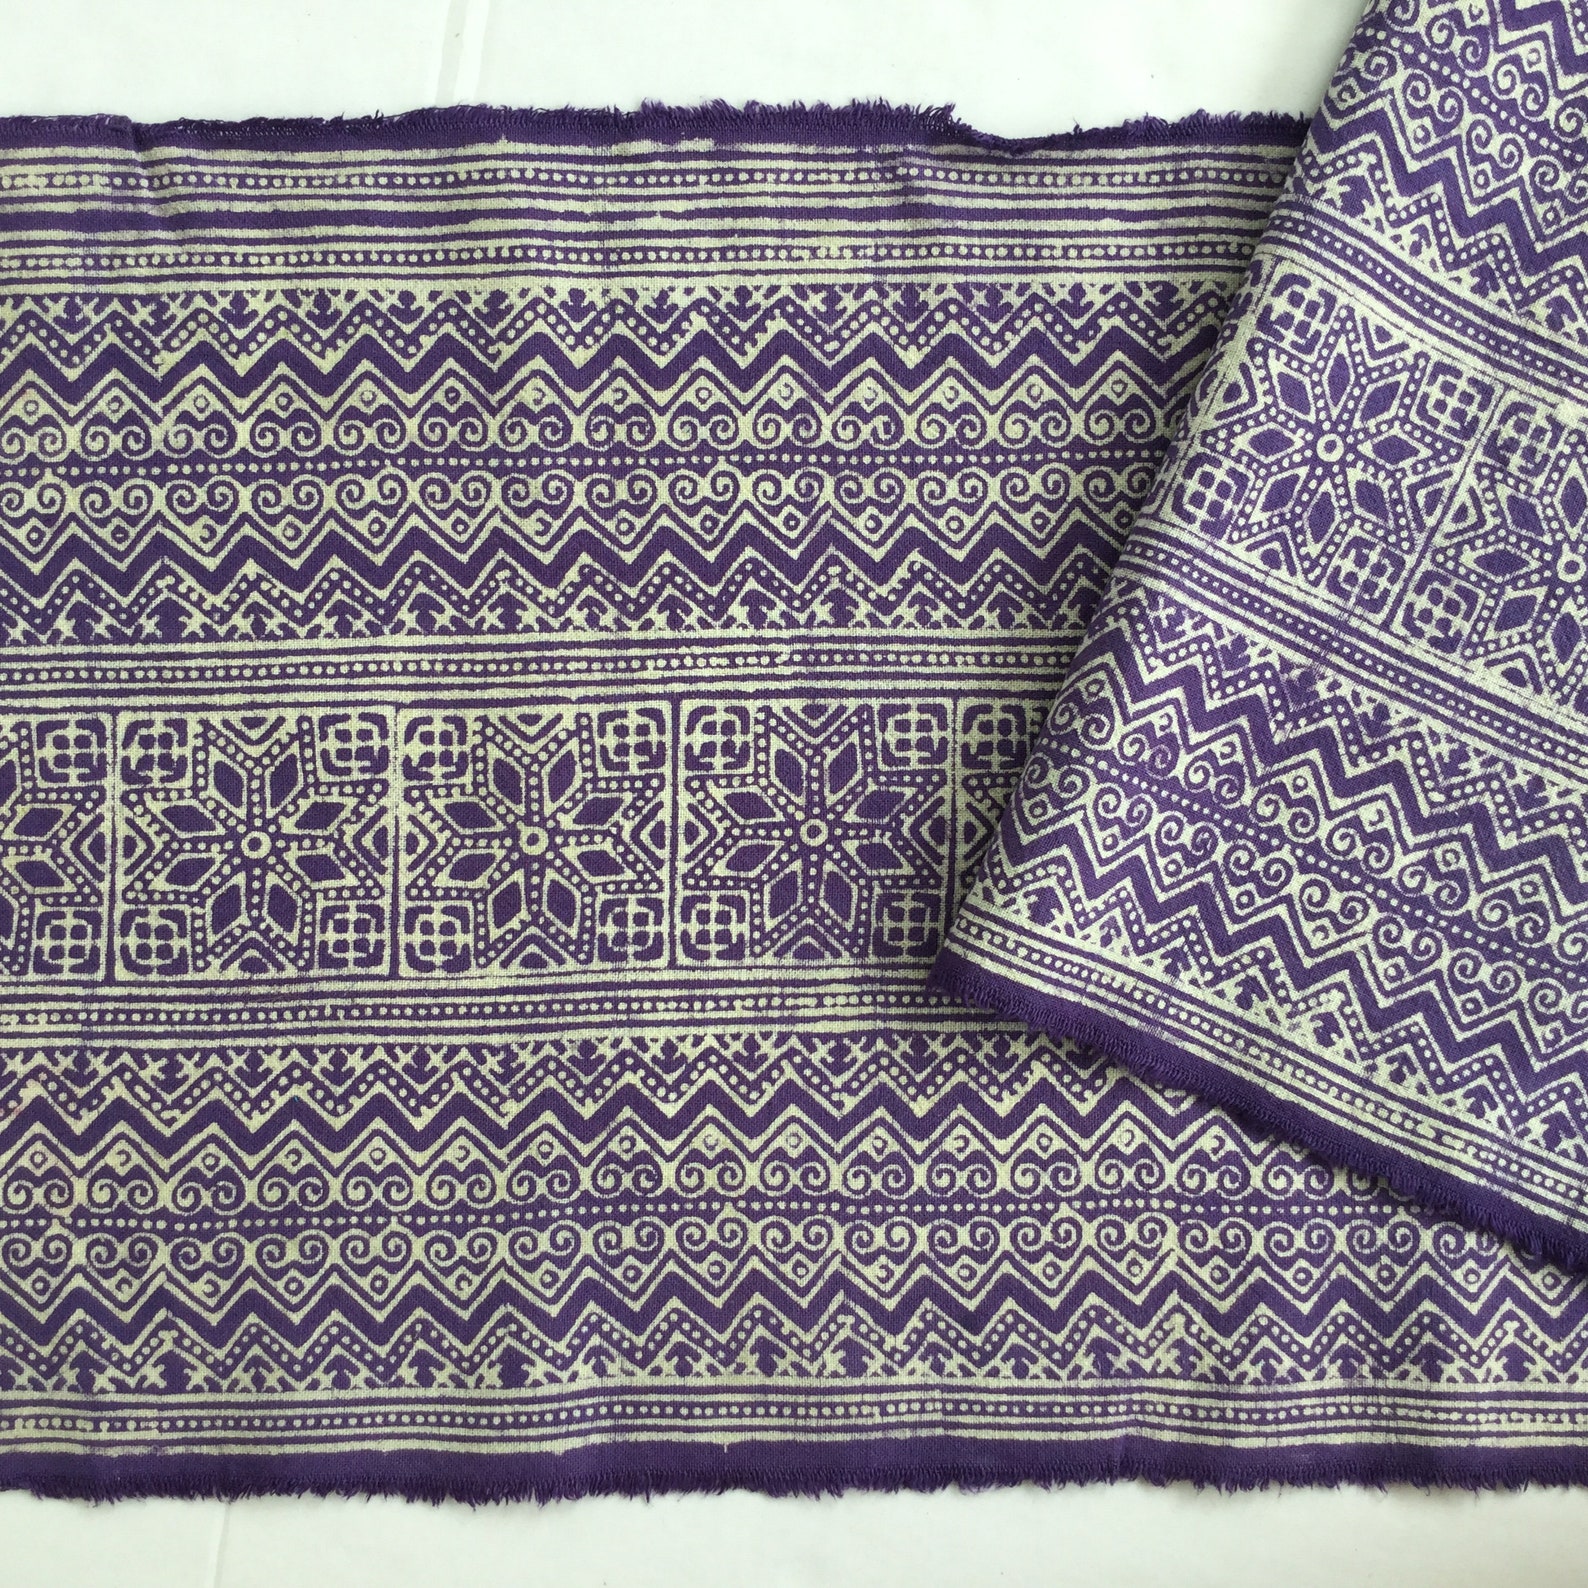 Sale Hmong cottonvintage Batik fabric textiles table | Etsy